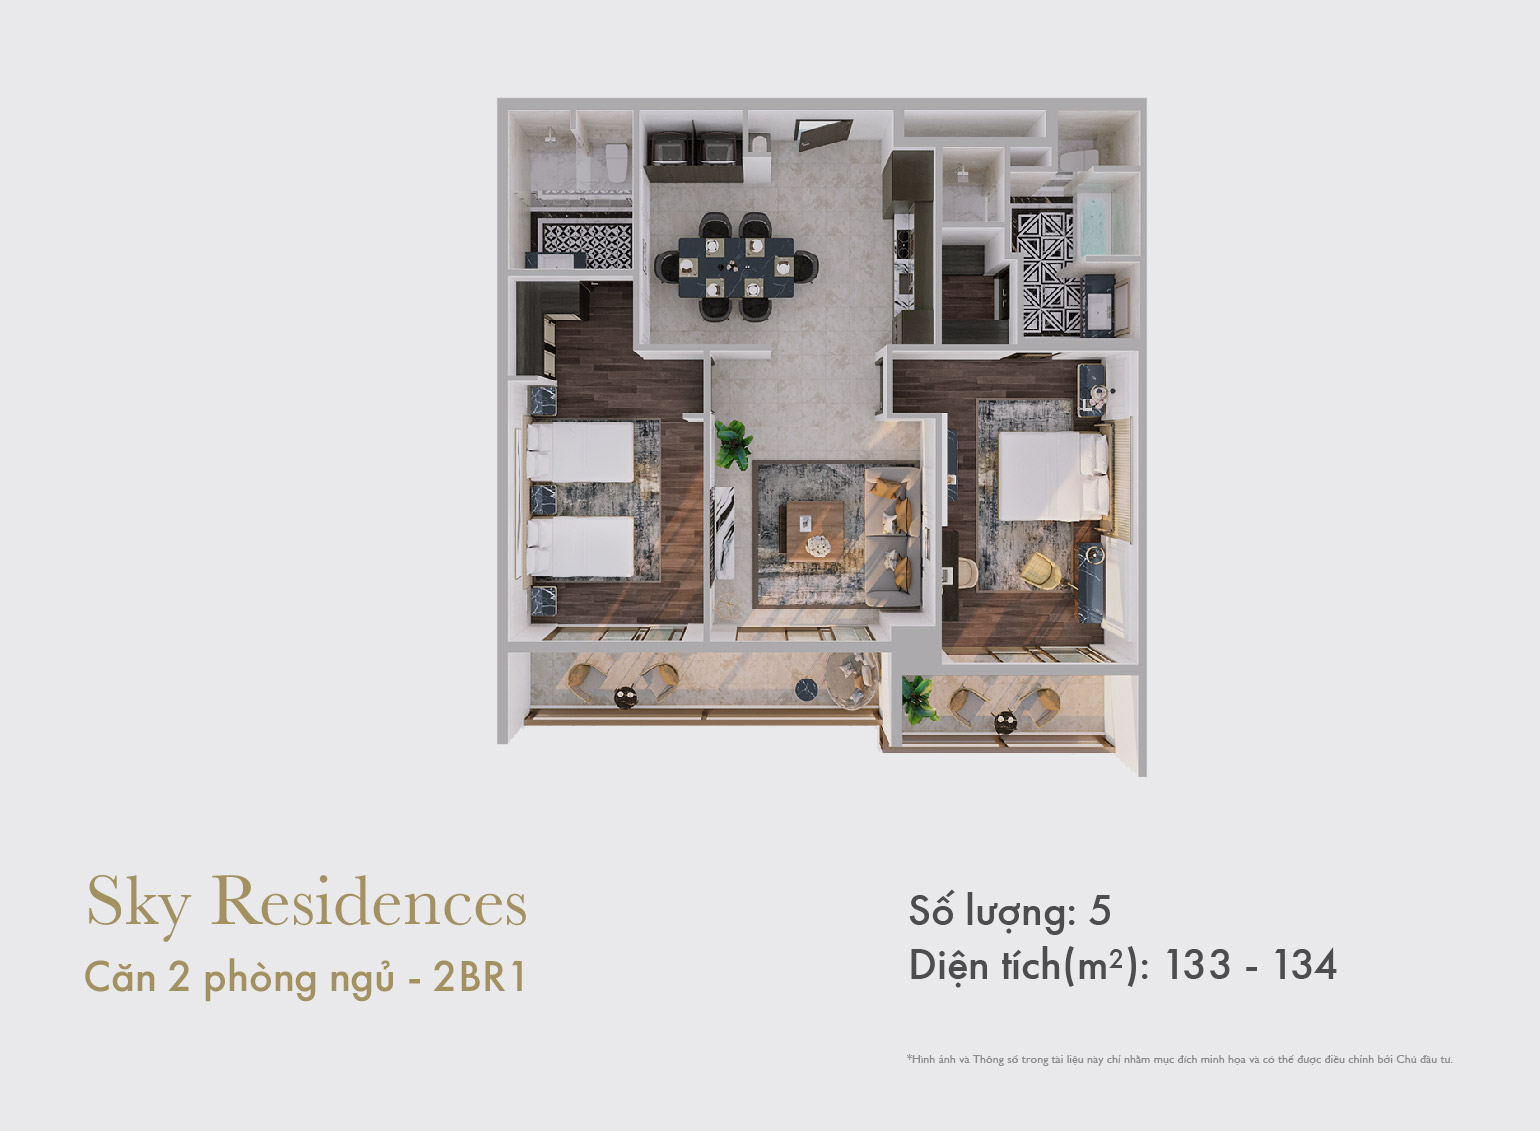 Sky Residences - Mặt bằng căn 2 phòng ngủ mẫu 1 dạng 1